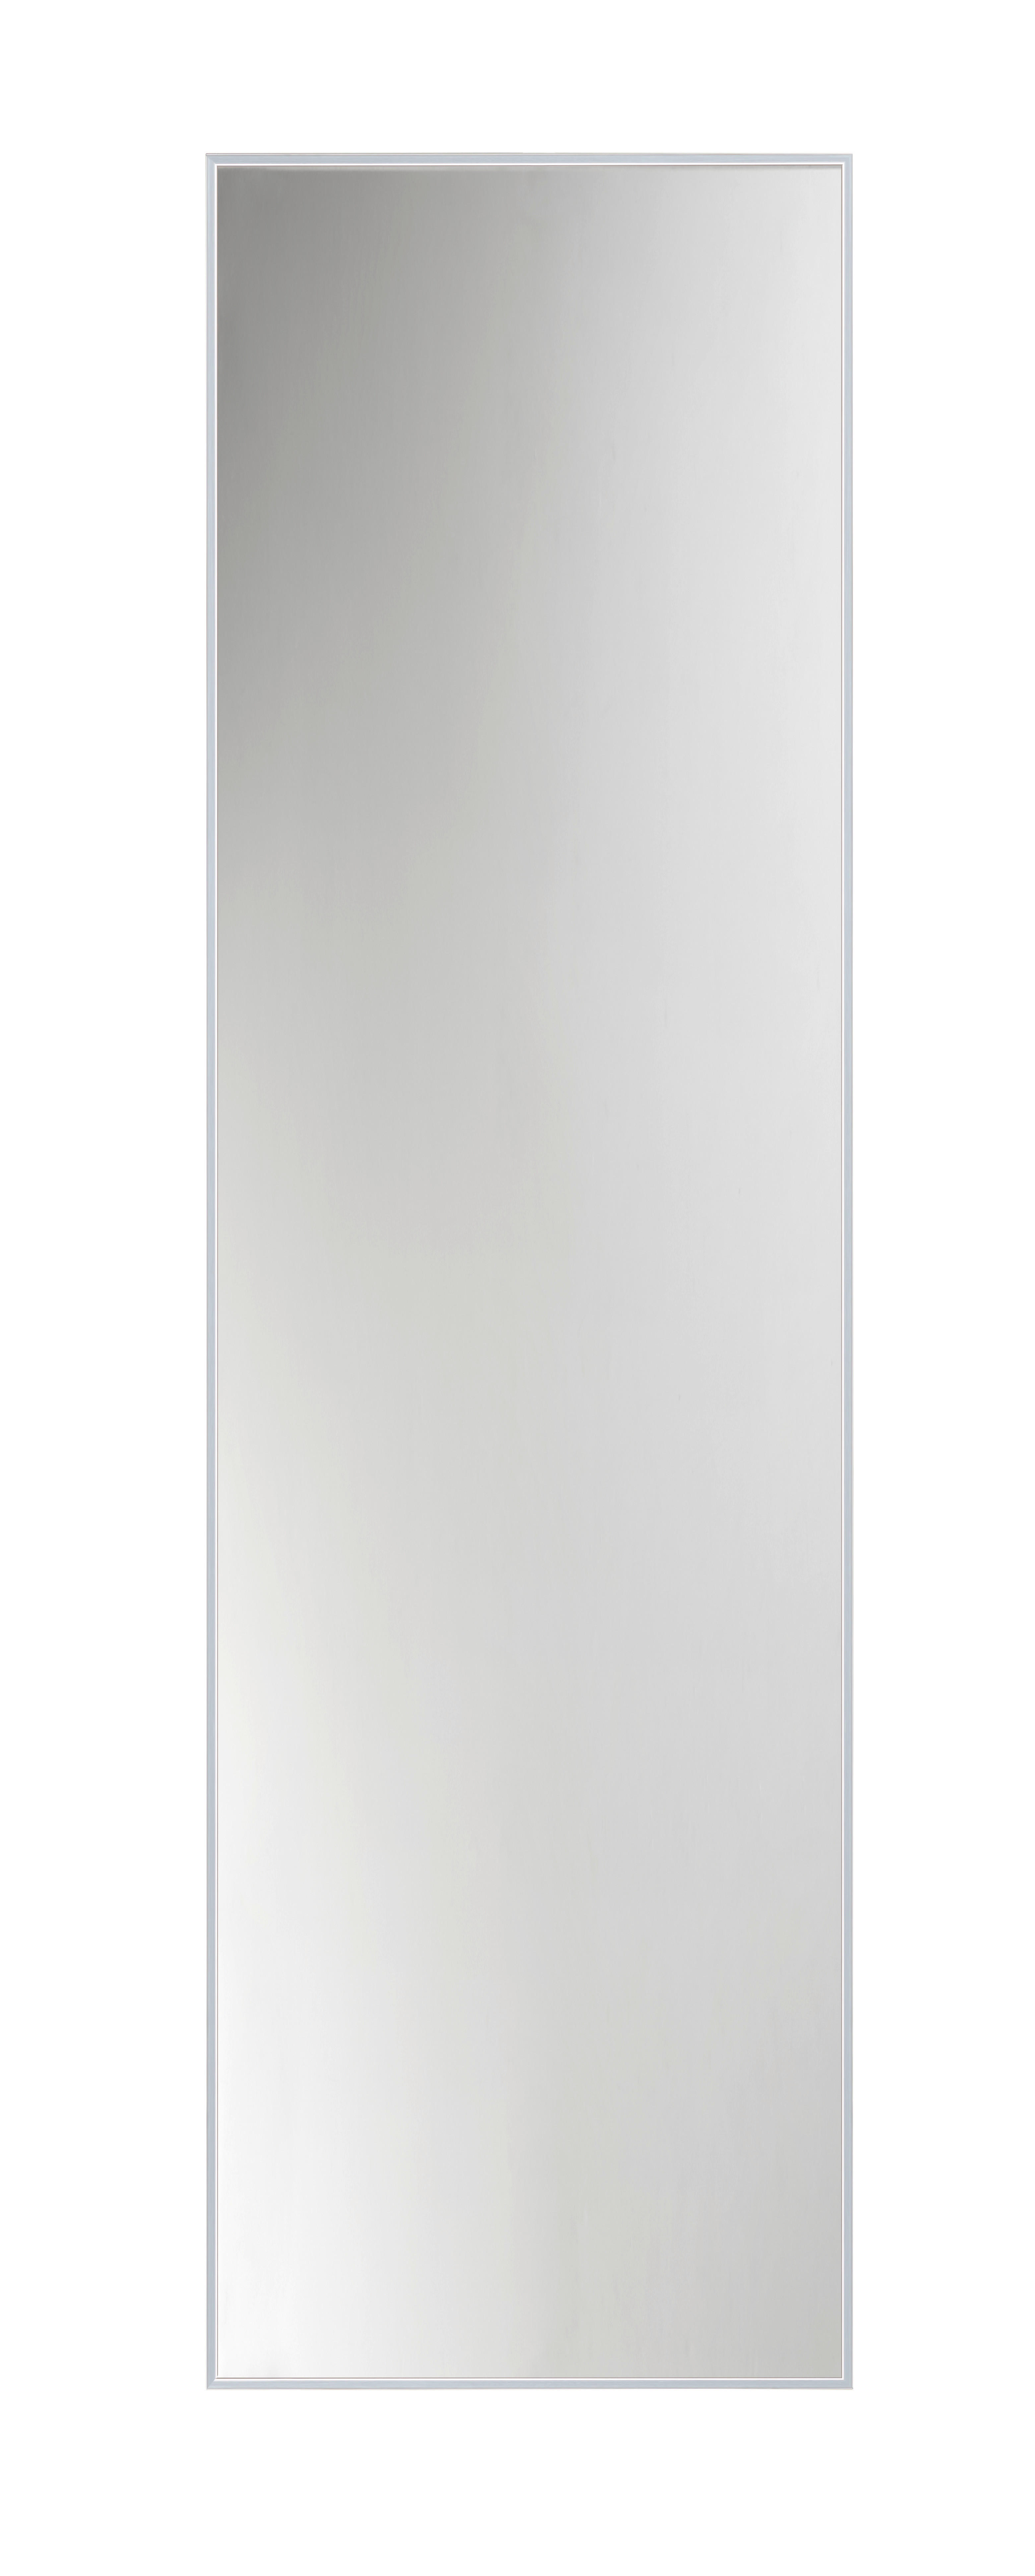 VÄGGSPEGEL 41/141/2 cm    - alufärgad/silver, Design, metall/glas (41/141/2cm)